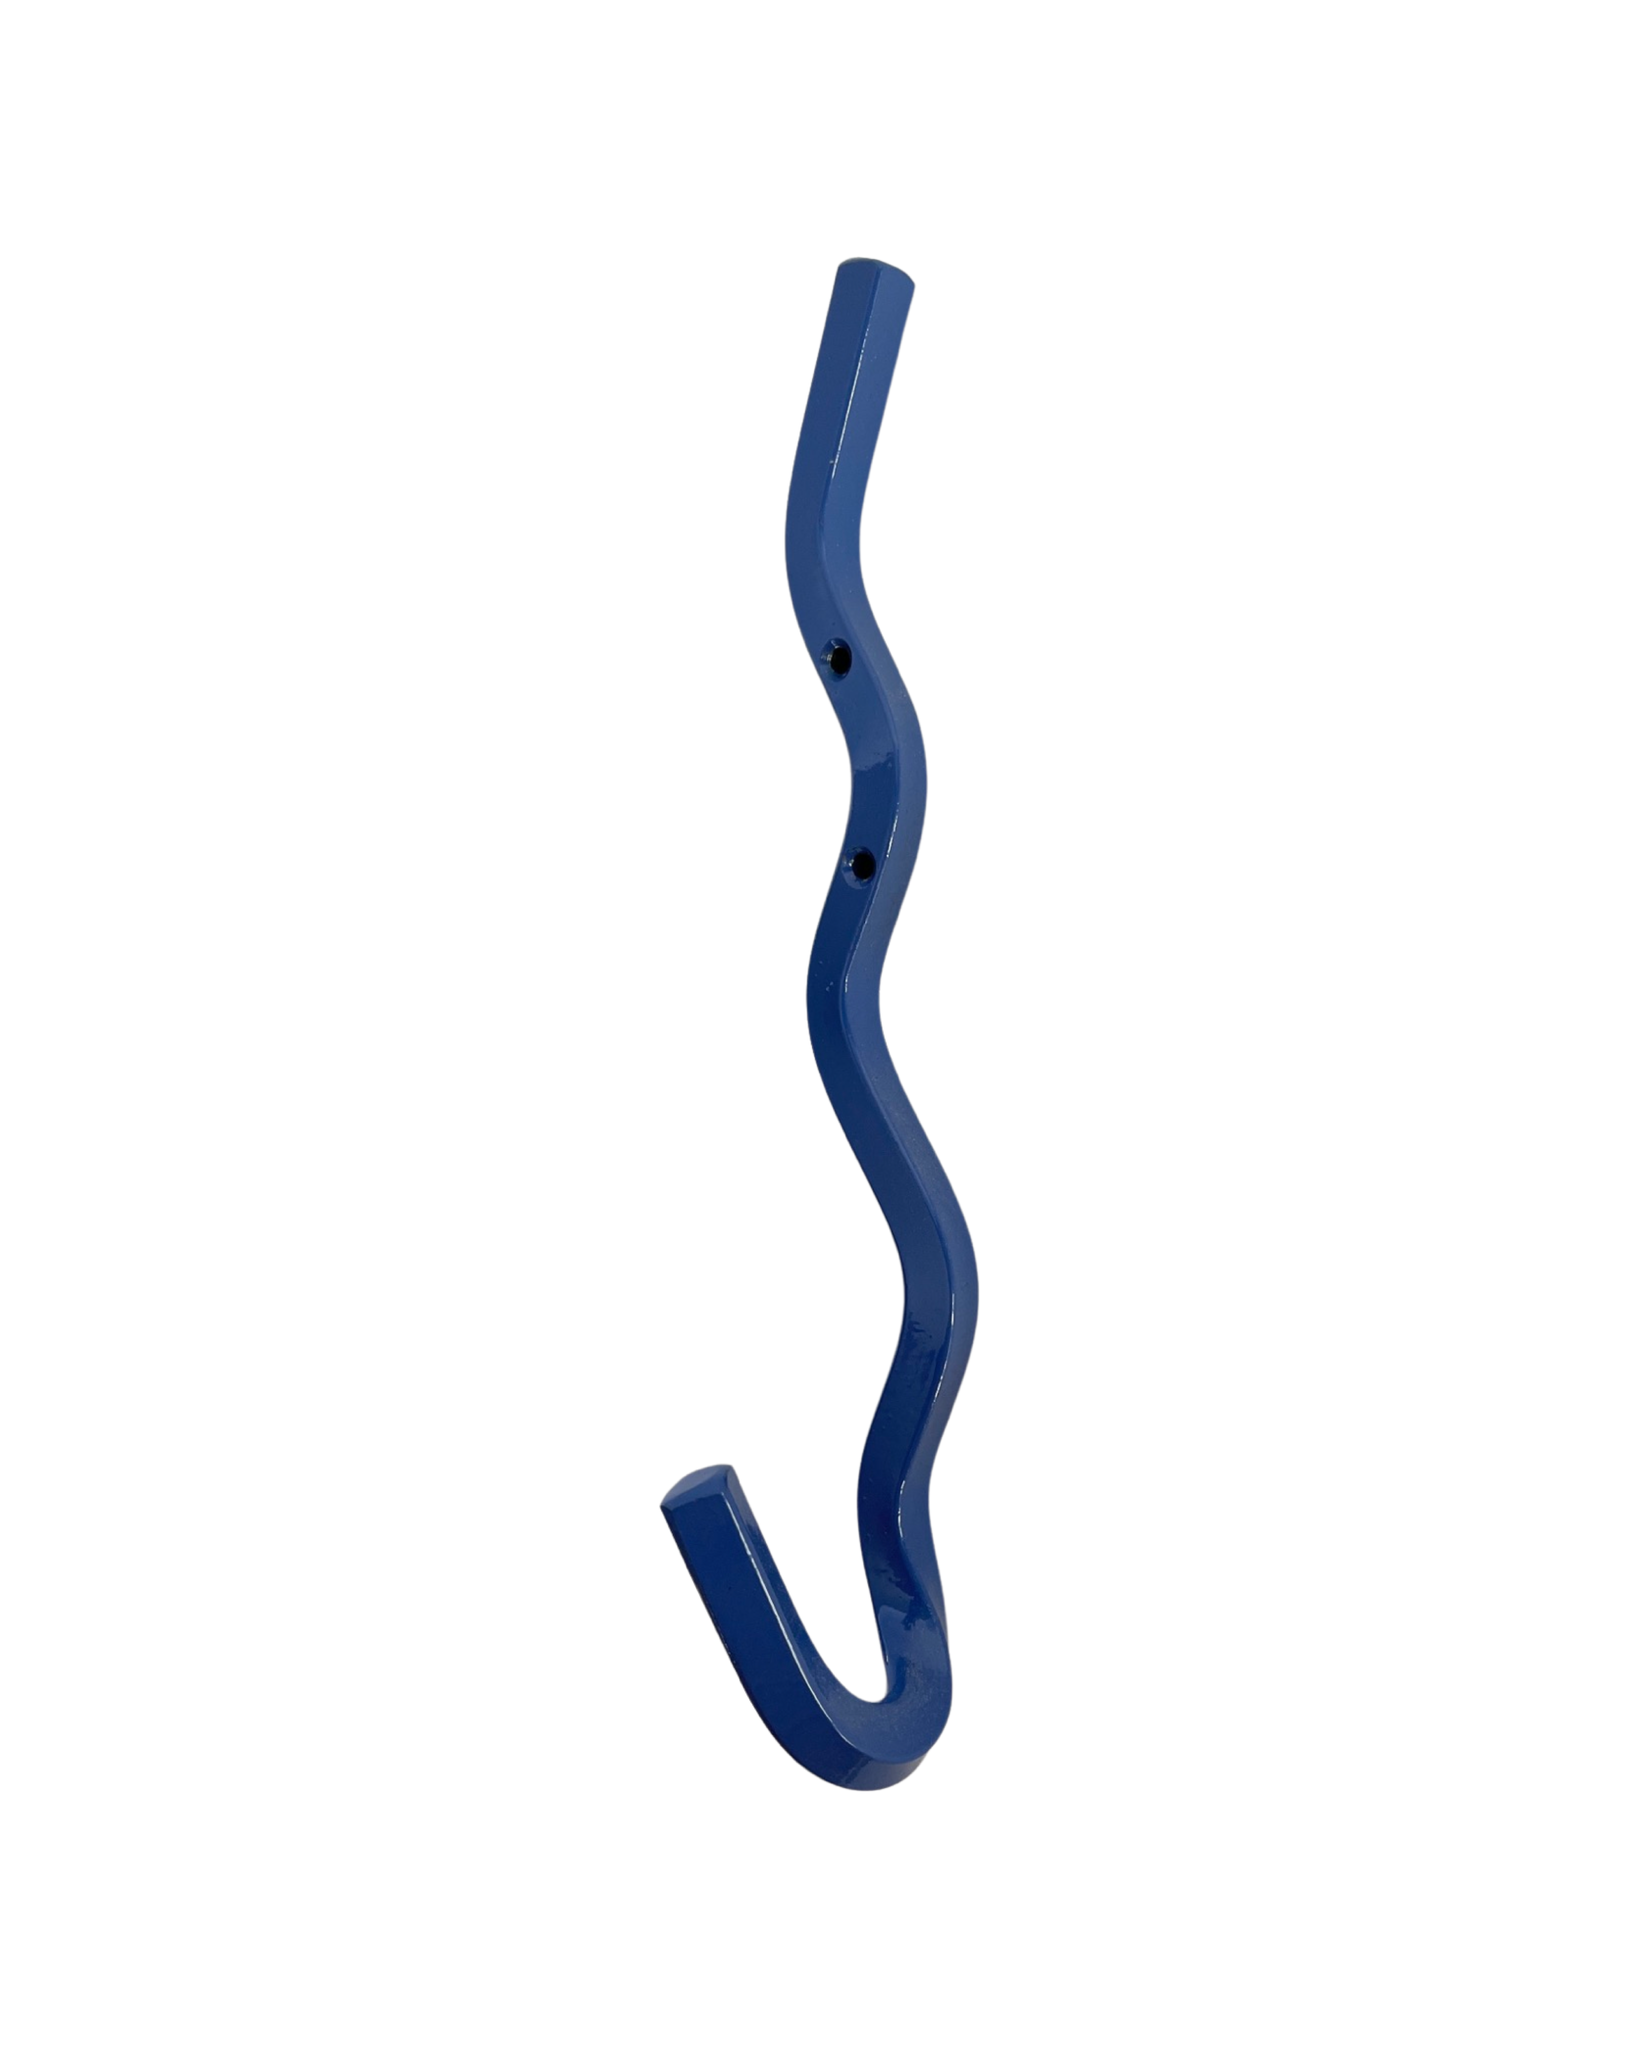 Wiggle Hook - Juniper Blue